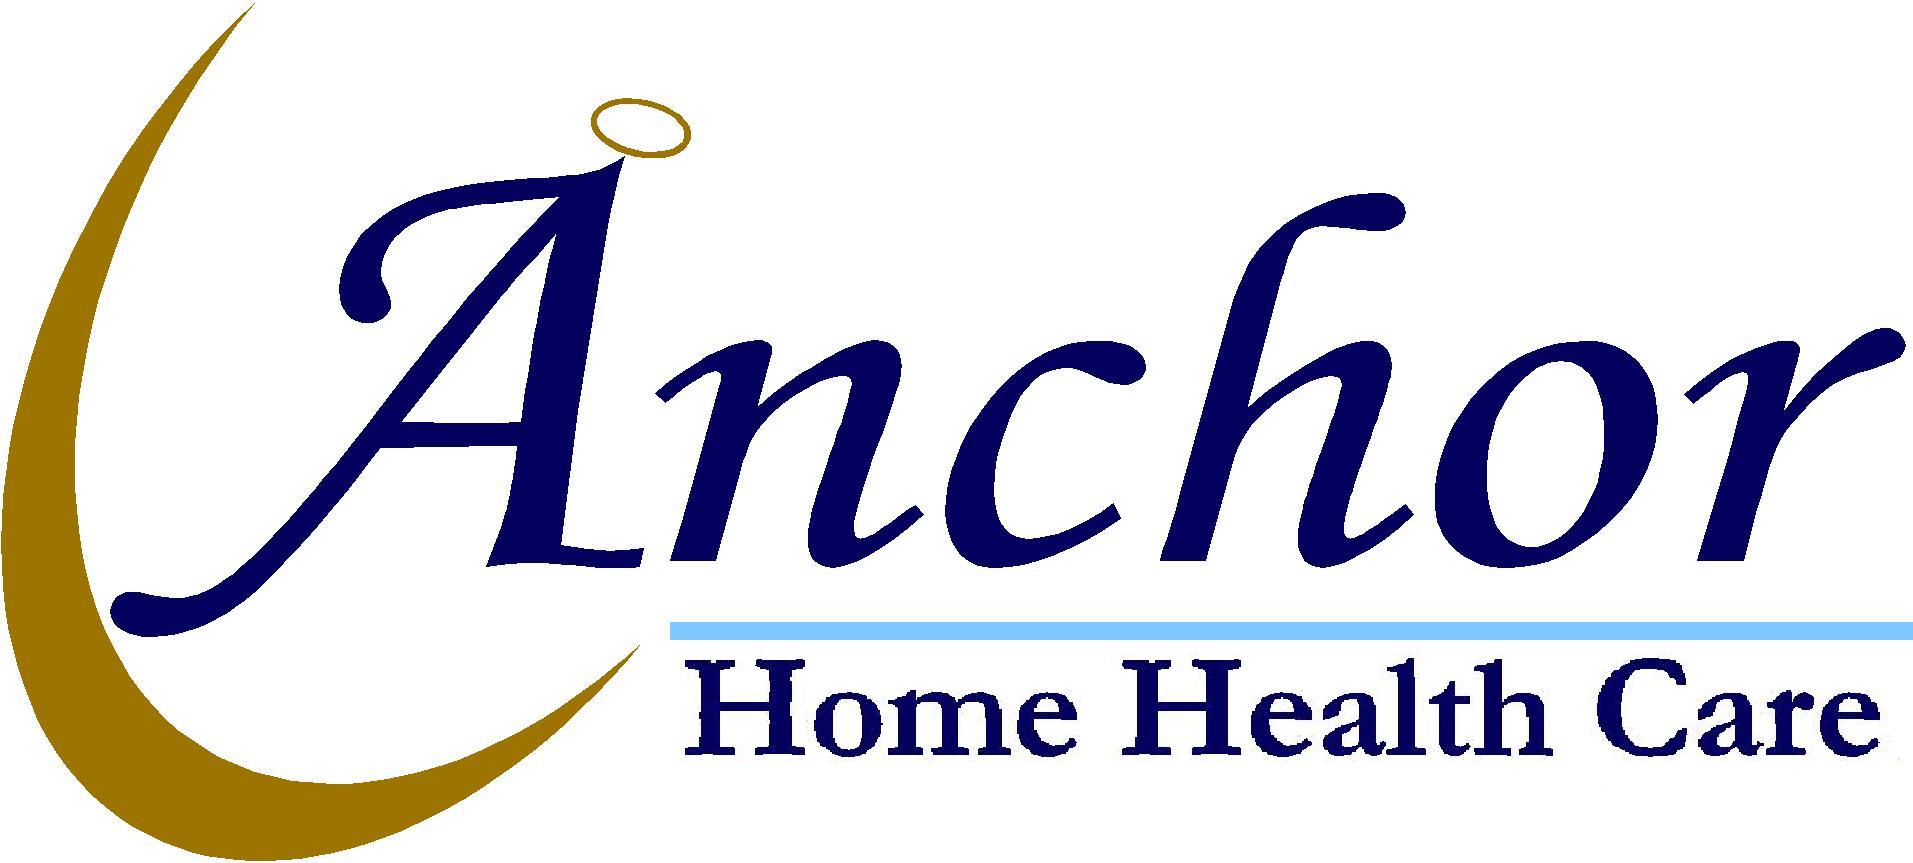 Pin by Sapphire Loren on Logo Ideas (AOH) Home health